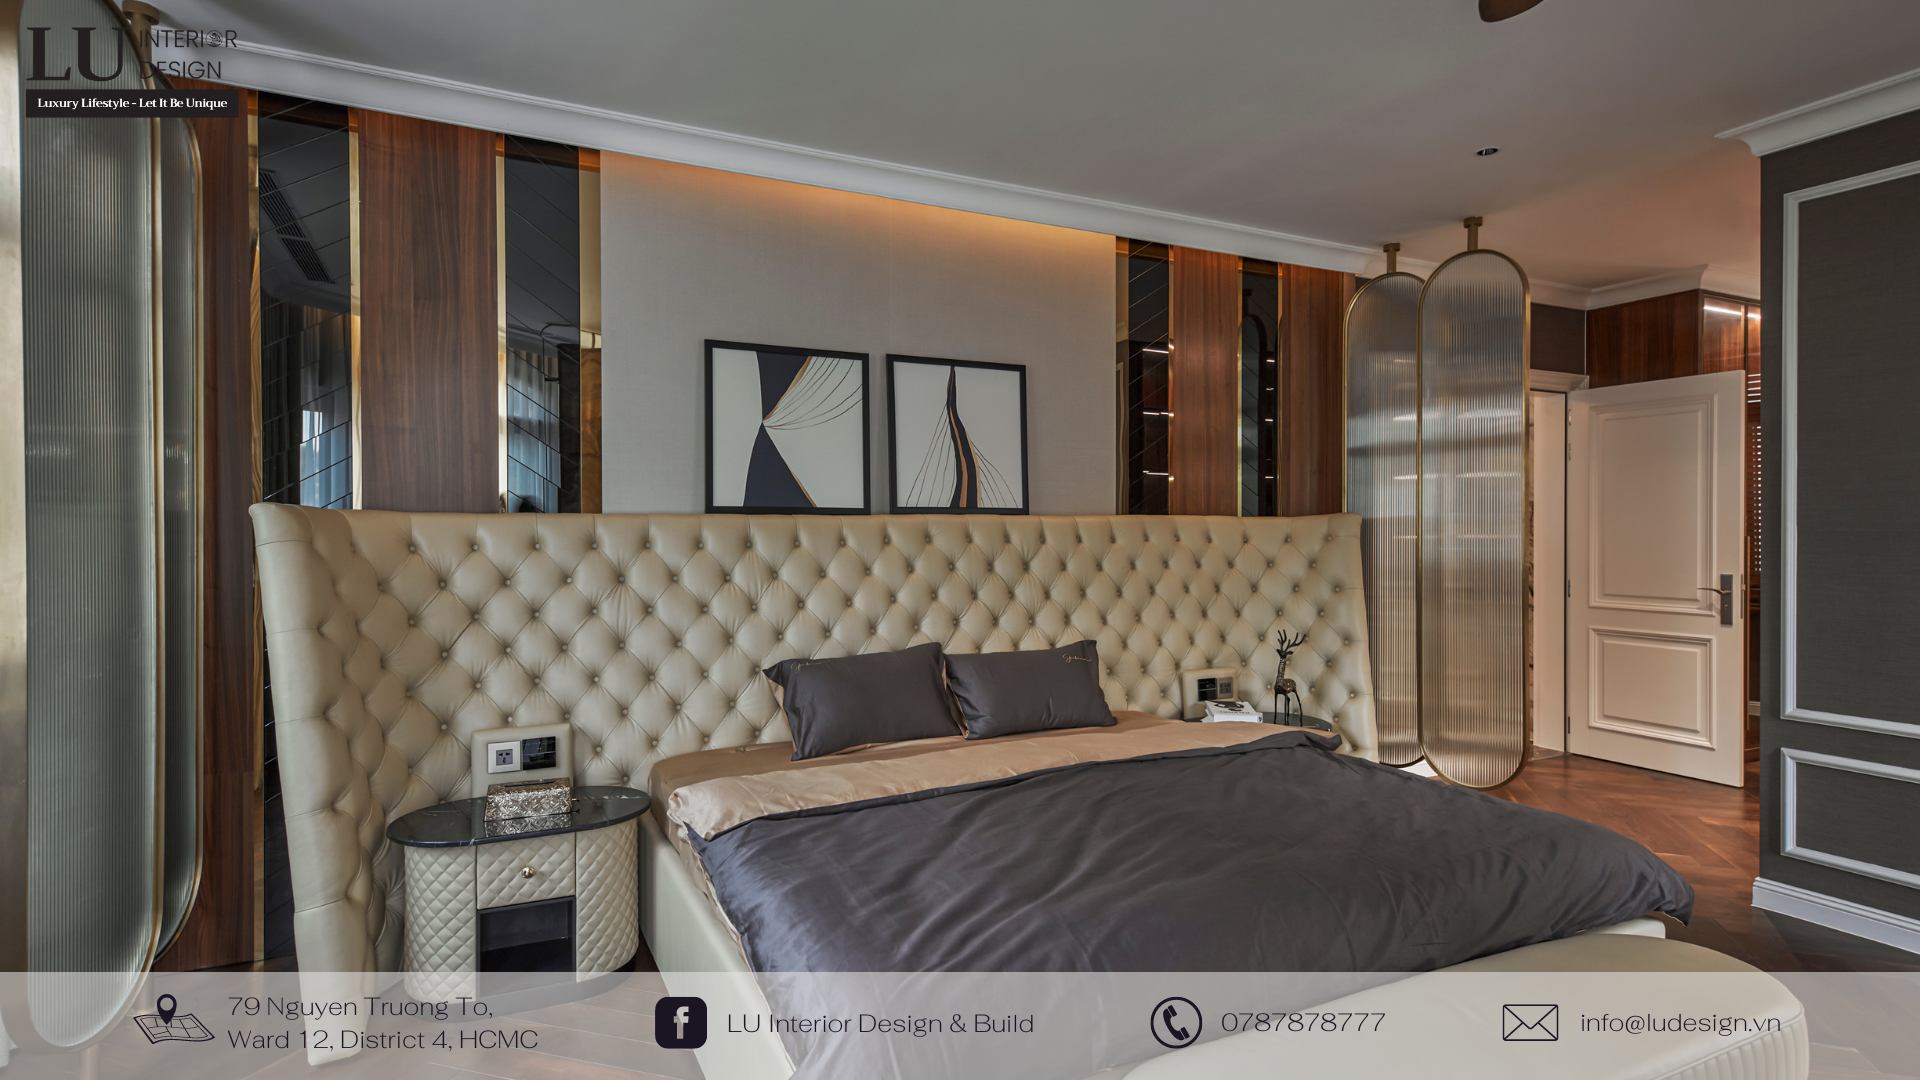 KTS nhà LU Design hoàn thiện vẻ đẹp nội thất cho không gian phòng ngủ bằng nhiều loại vật liệu mang tính chất phù hợp sự sang trọng mà gia chủ hướng tới | Nguồn: Dự án Victoria - Ảnh thực tế - LU Design.